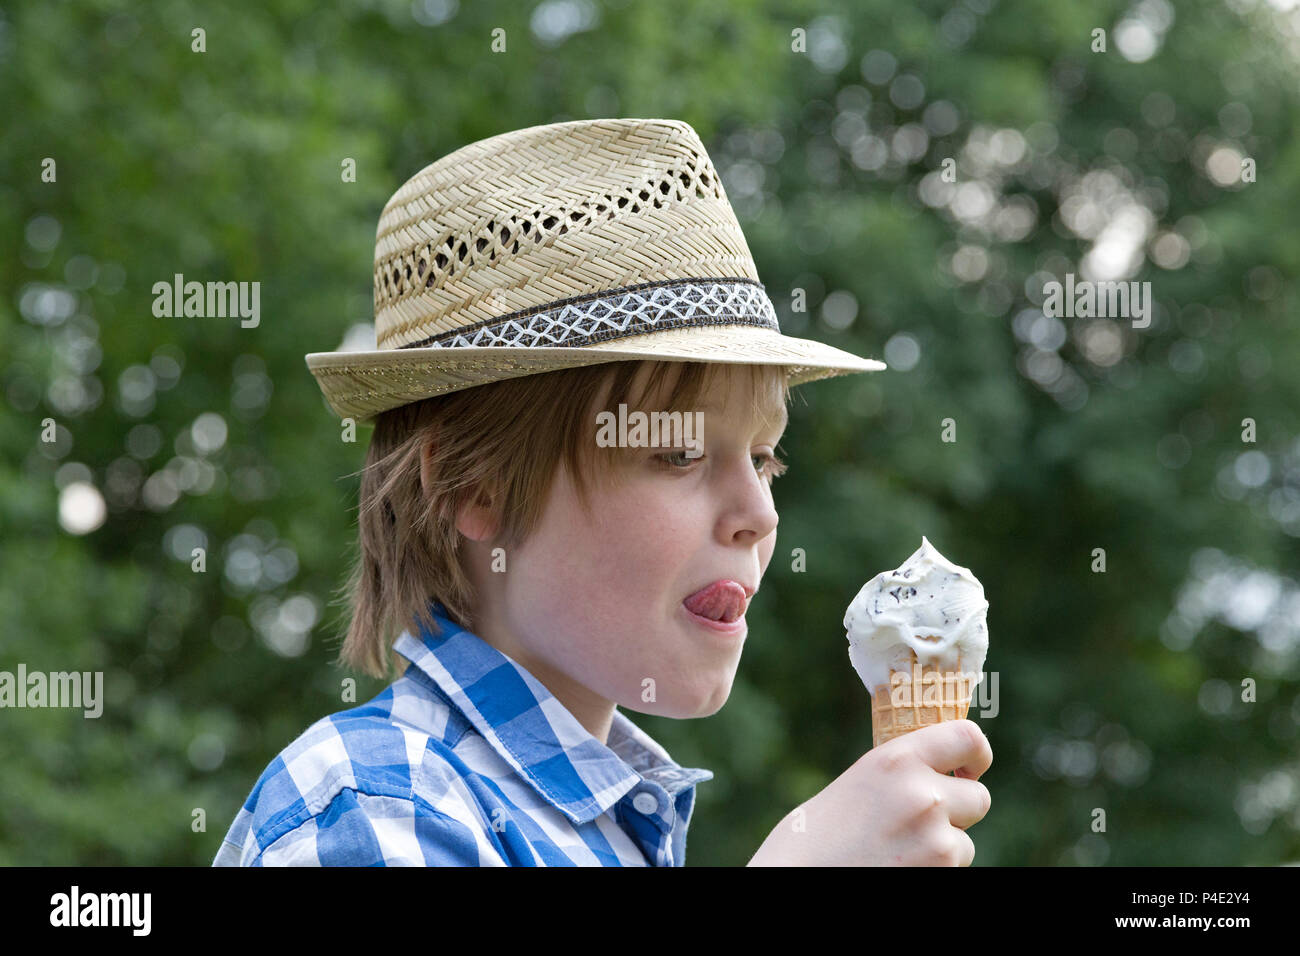 boy eating ice cream Stock Photo